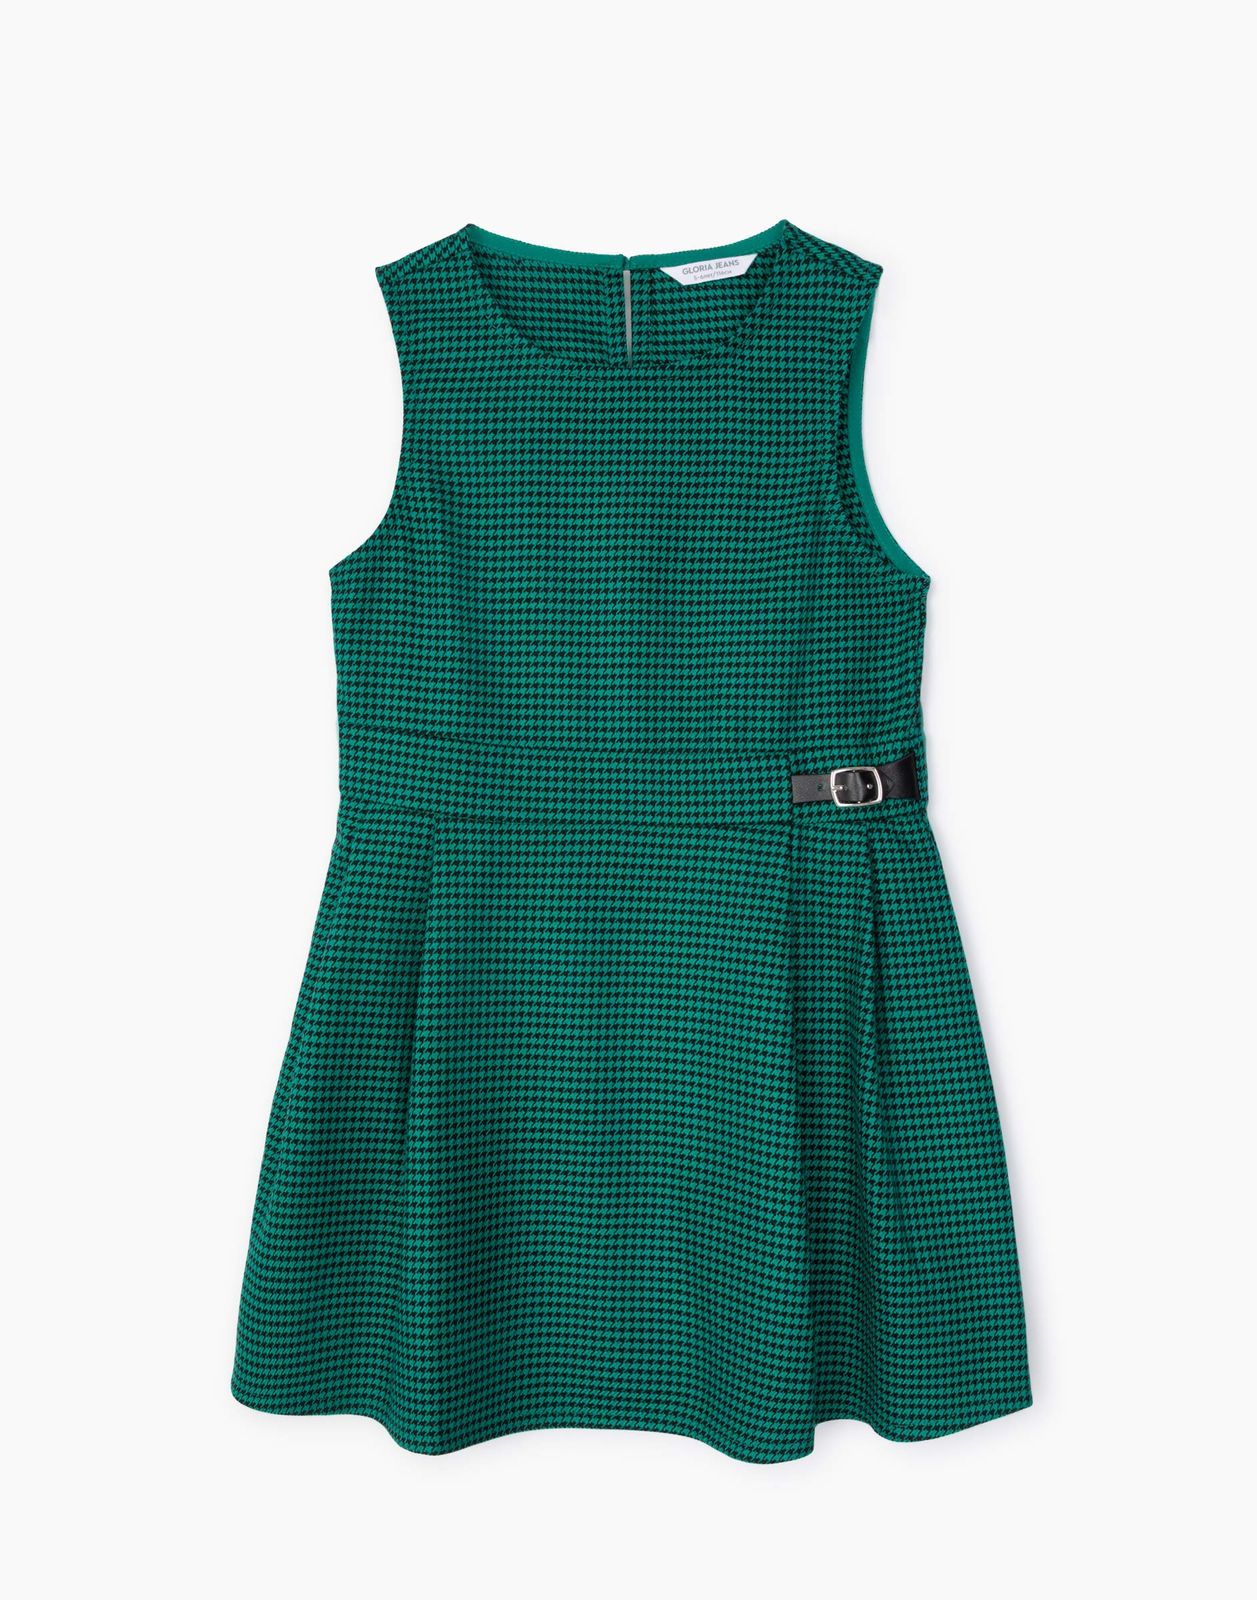 Платье детское Gloria Jeans GDR027840, зеленый/черный, 140